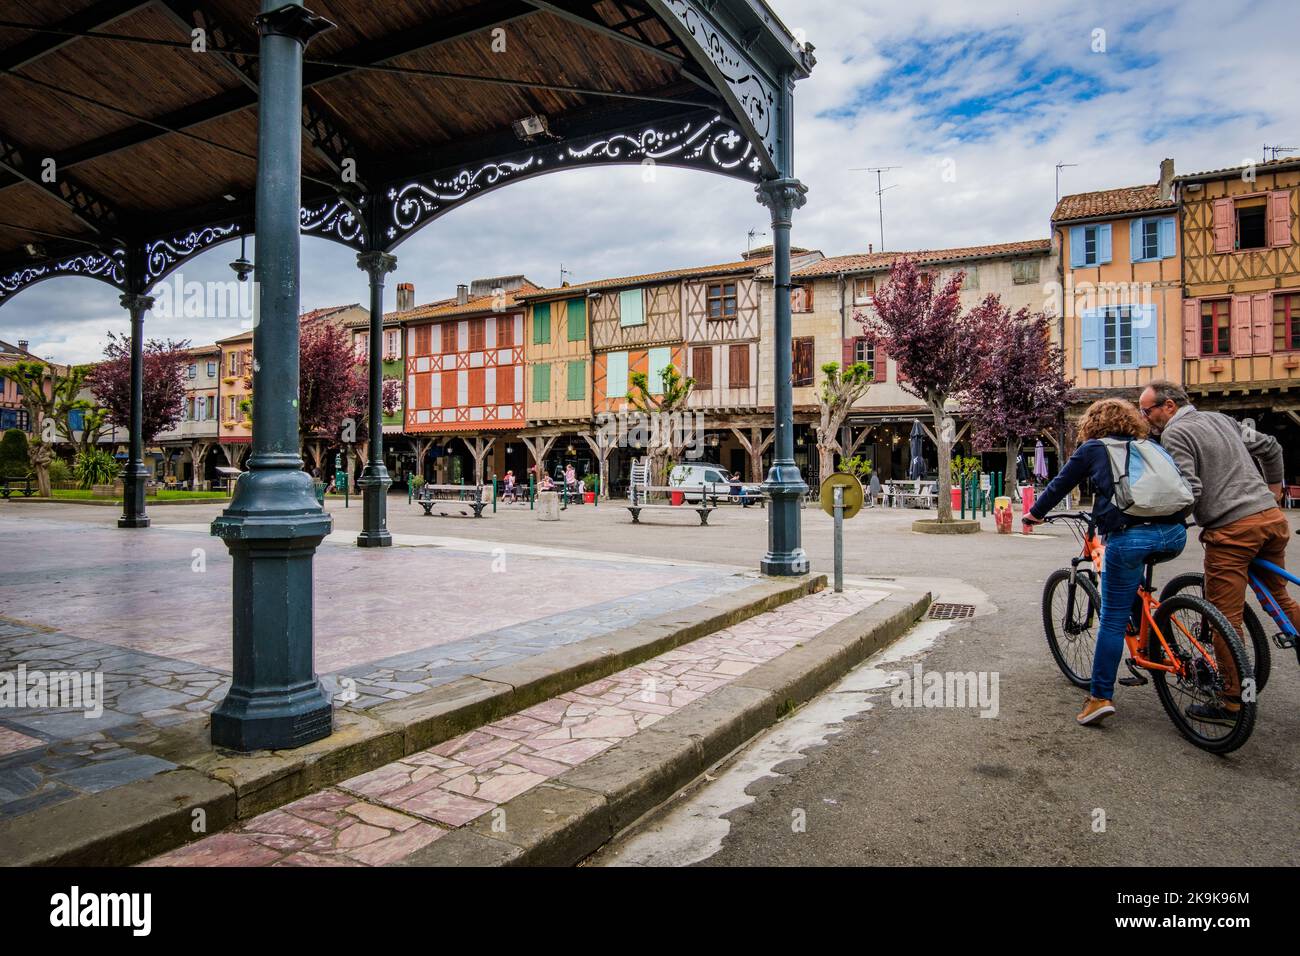 Il mercato coperto e le case medievali a graticcio sulla piazza principale di Mirepoix, nel sud della Francia (Ariege) Foto Stock